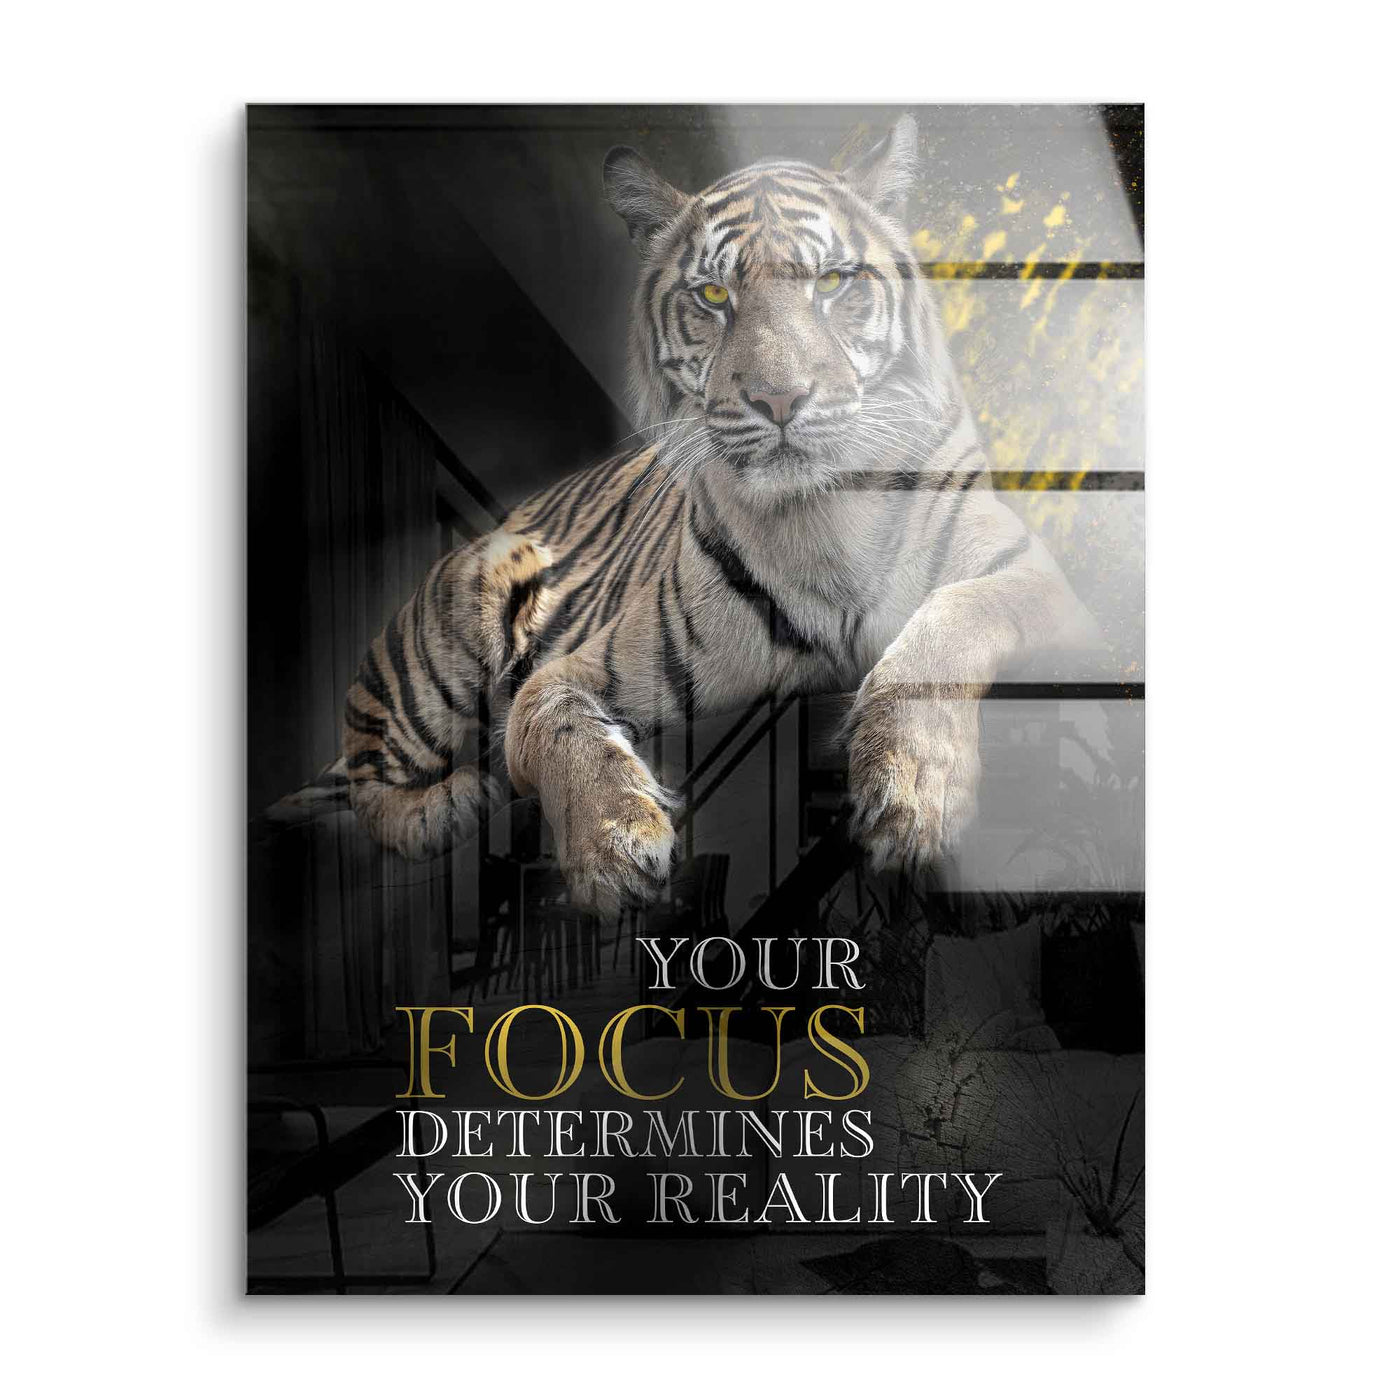 Focus determines reality